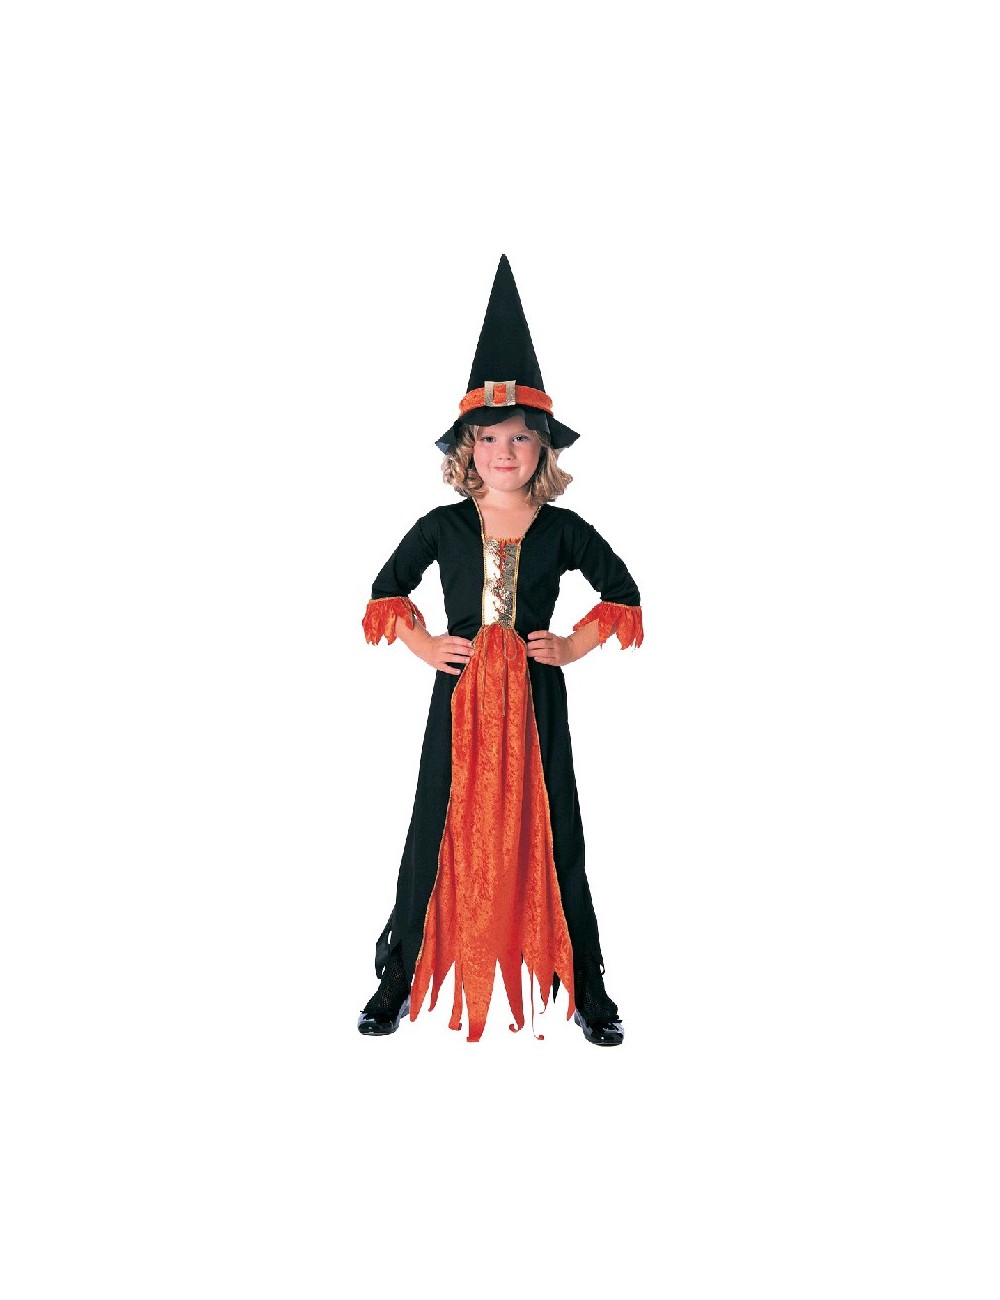 Costum Halloween fete: Vrajitoarea cea draguta Rubie's